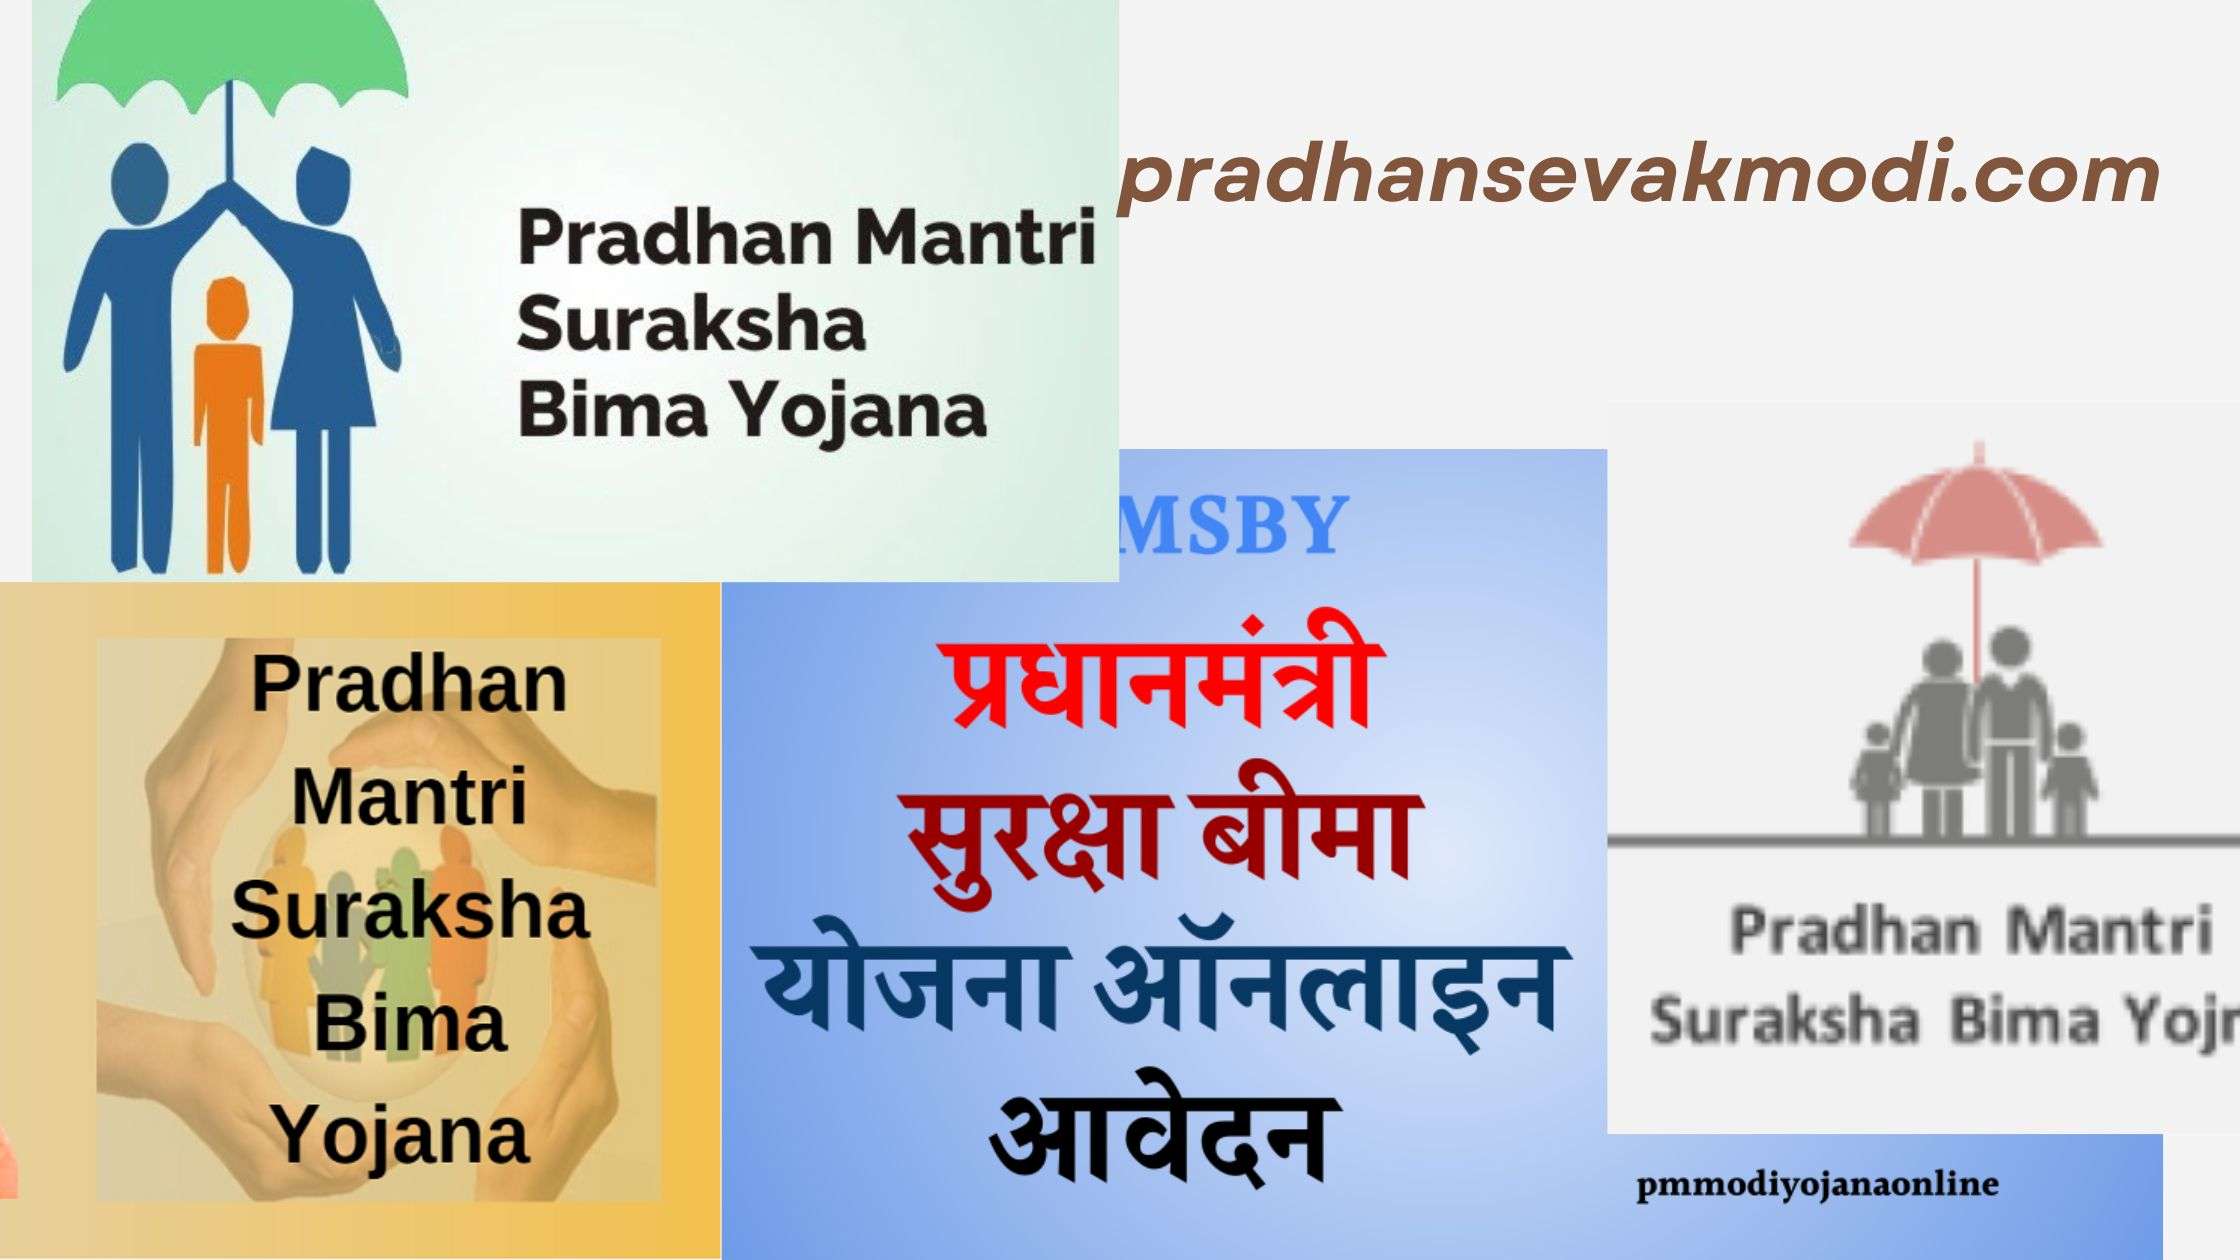 Pradhan Mantri Suraksha Bima Yojana